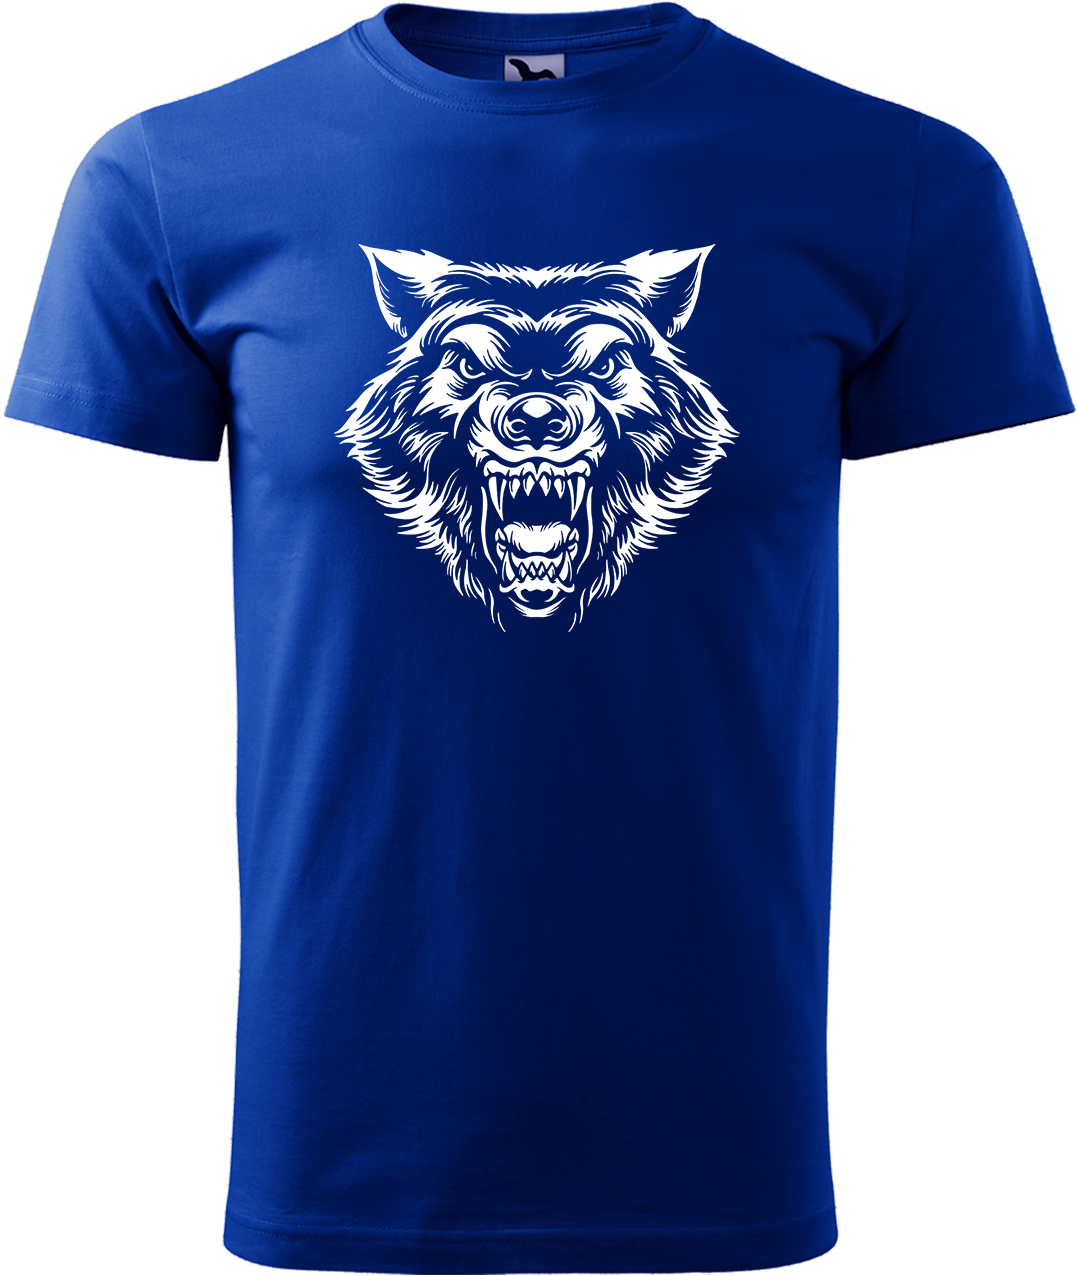 Pánské tričko s vlkem - Rozzuřený vlk Velikost: M, Barva: Královská modrá (05), Střih: pánský